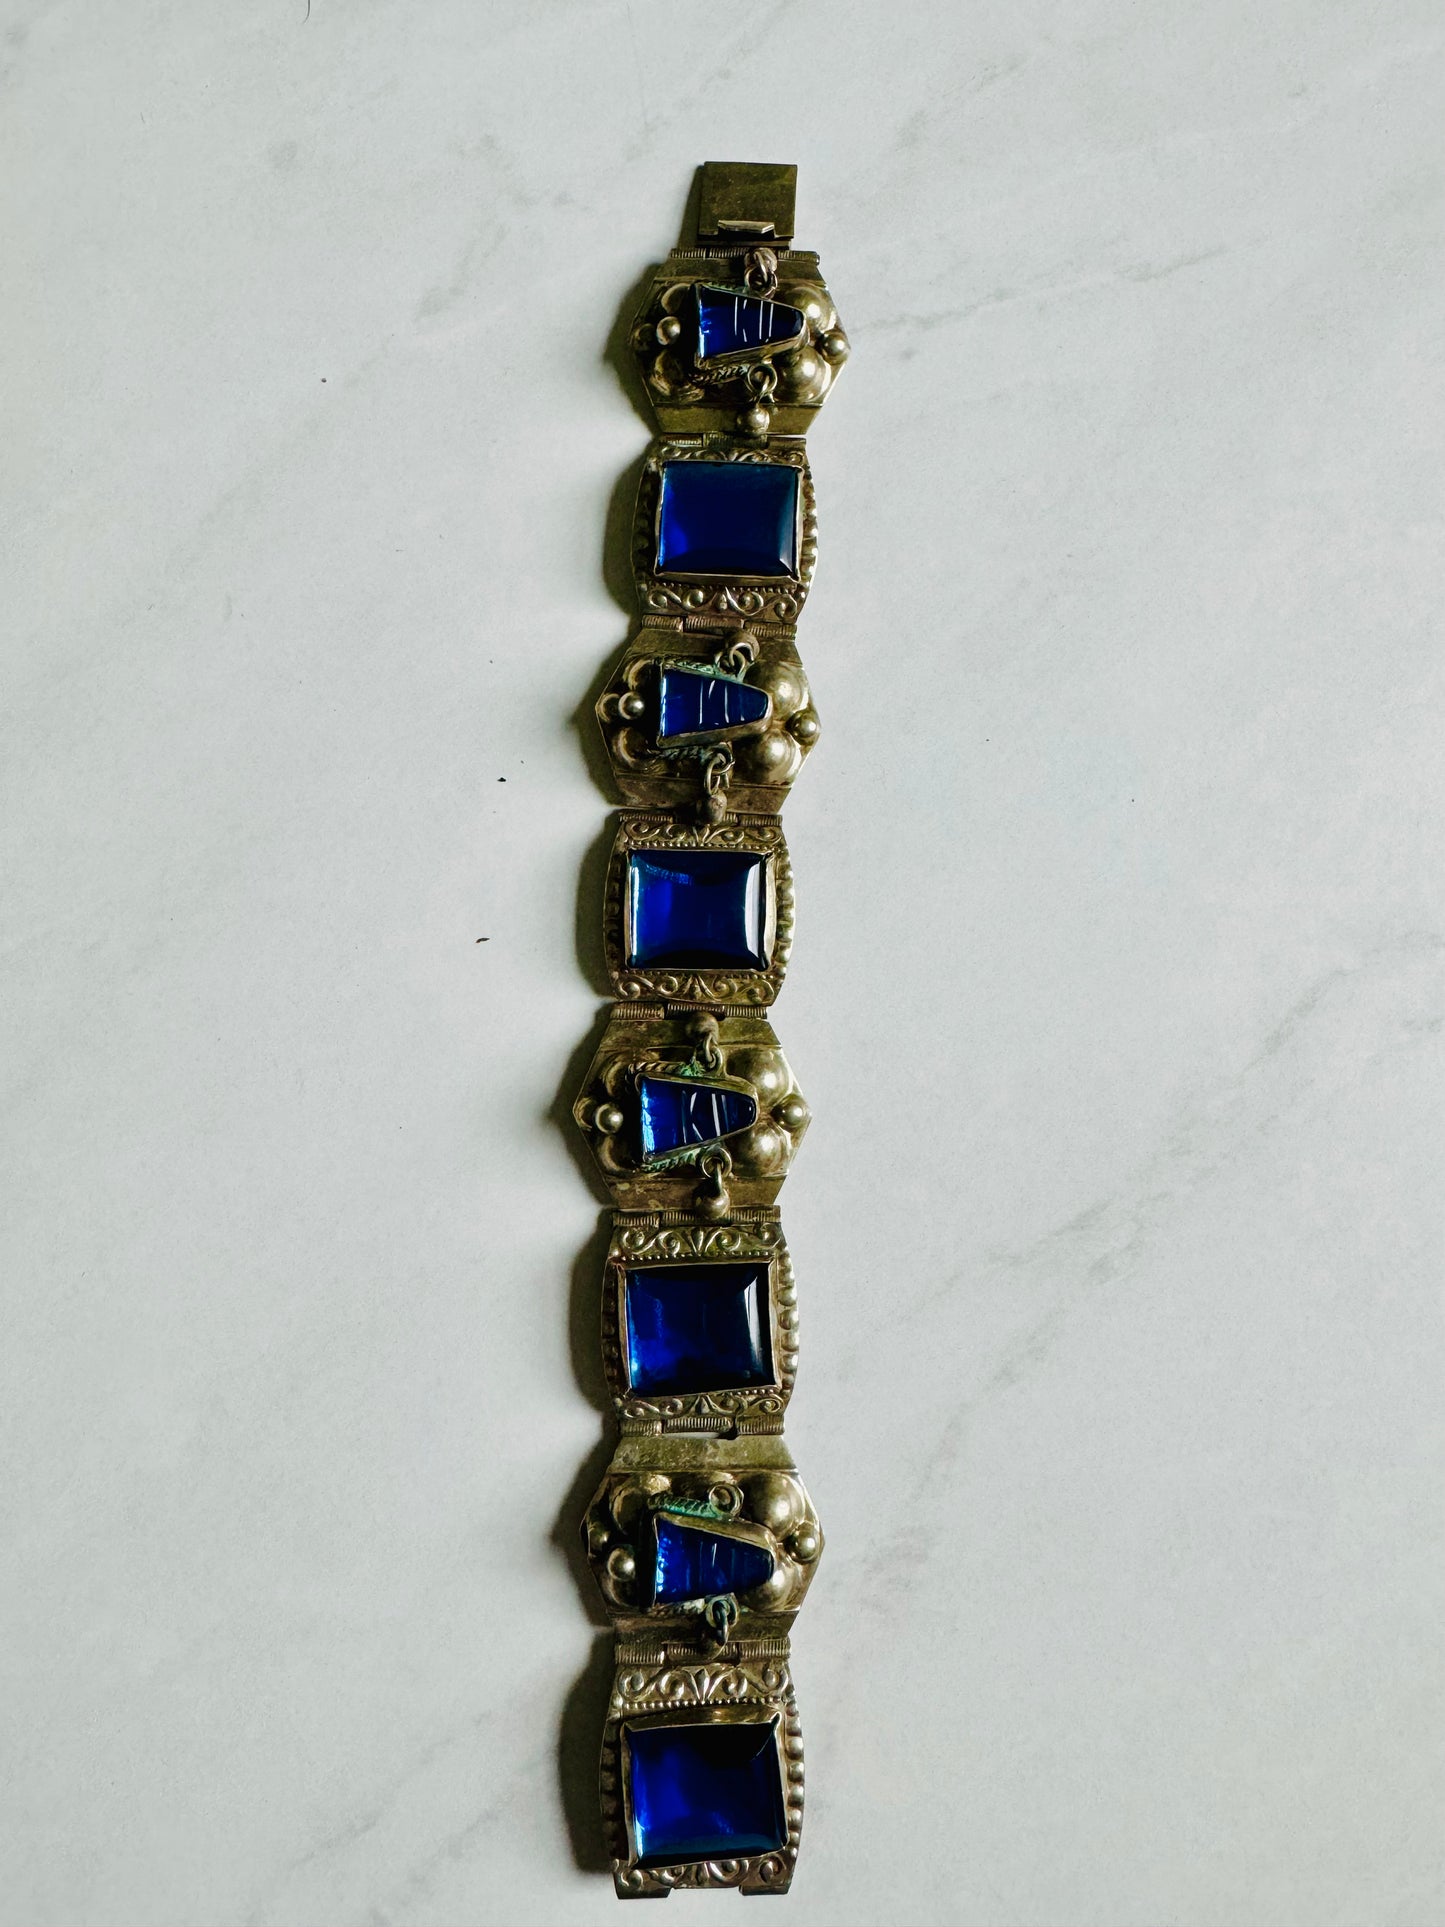 Vintage Sterling Silver bracelet with blue stones